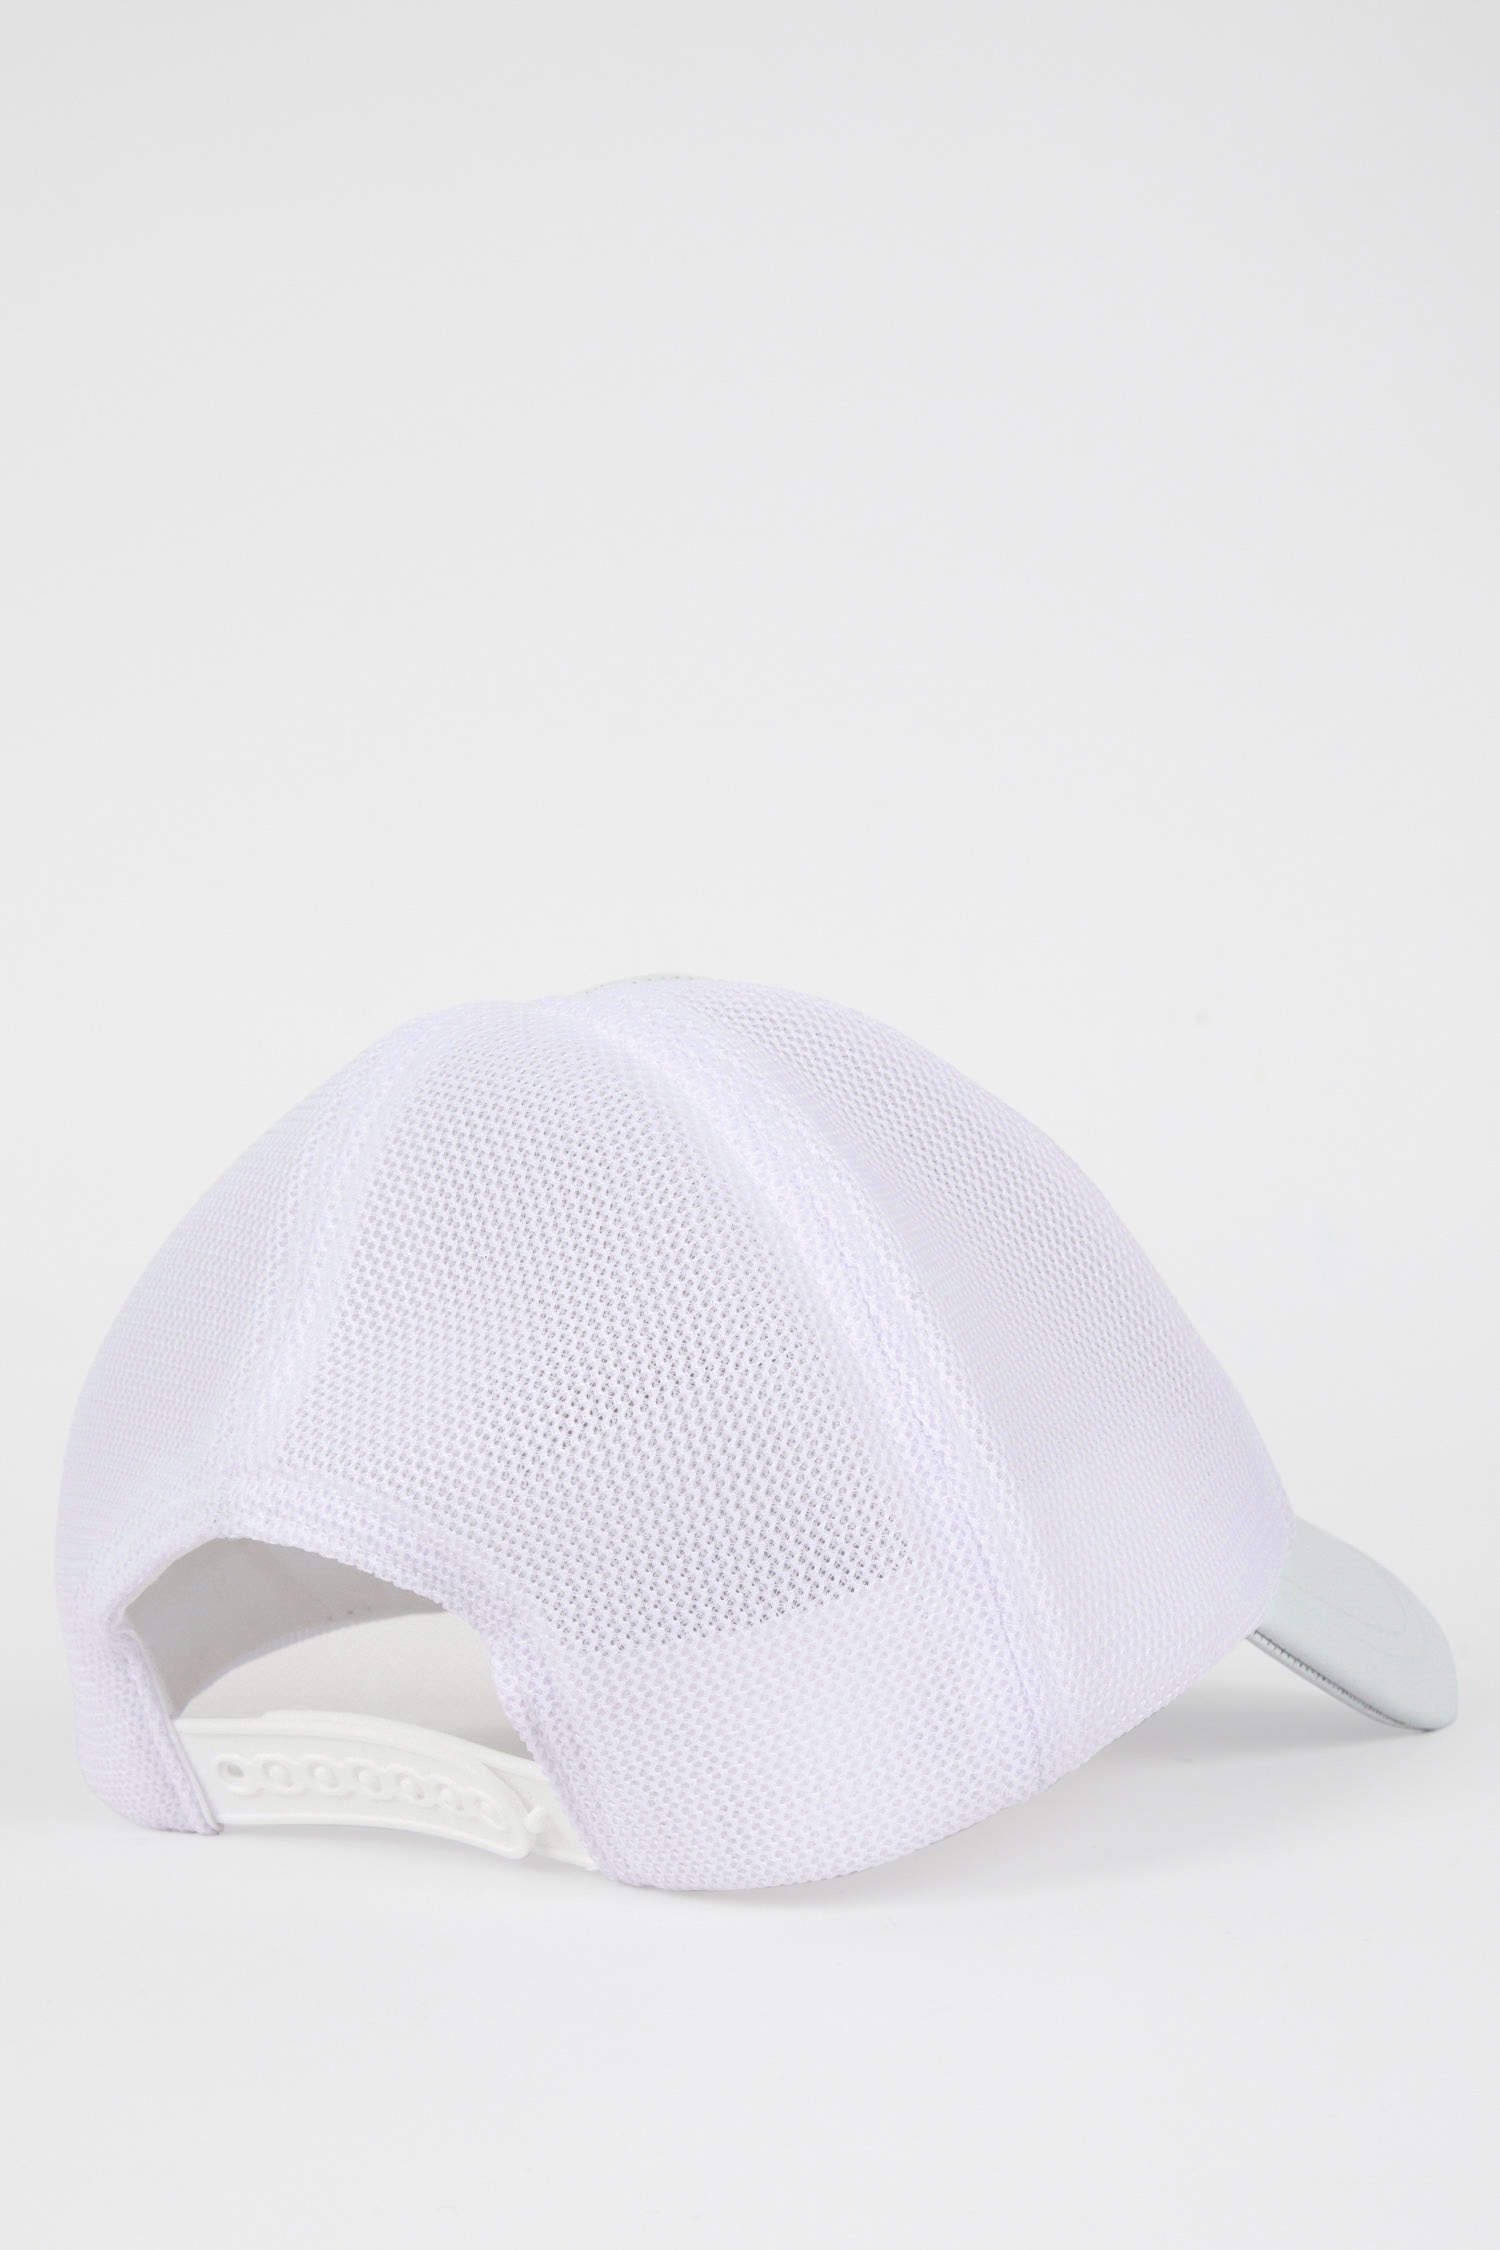 Defacto Kadın Elma Derisi Geri Dönüşümlü Beyaz Cap Şapka. 8